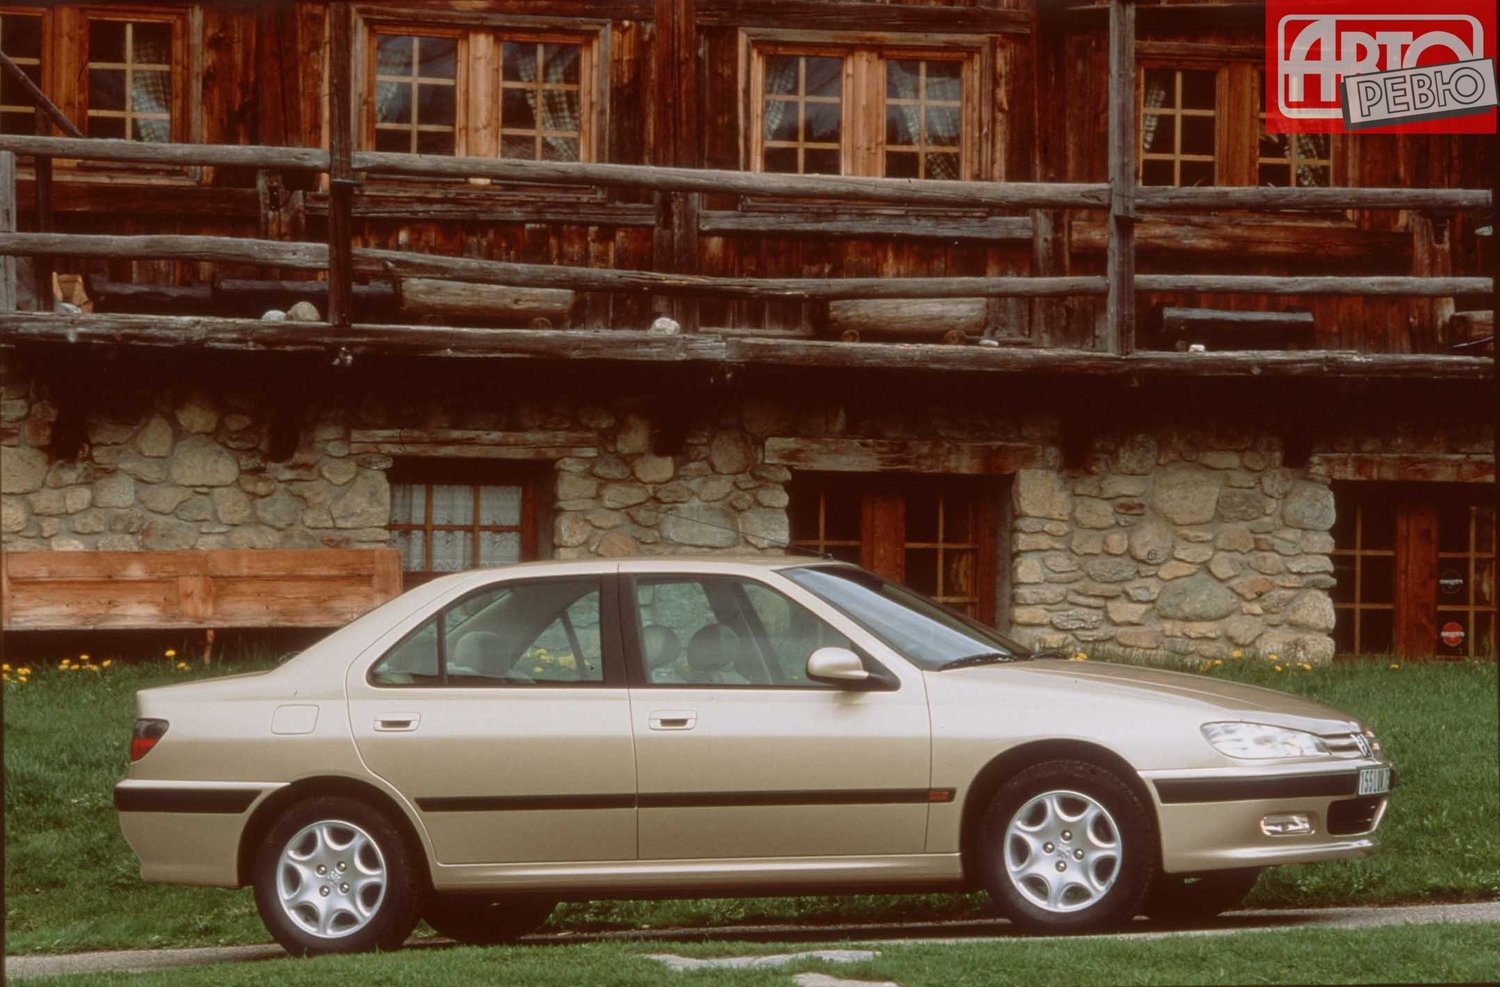 седан Peugeot 406 1996 - 2004г выпуска модификация 1.6 MT (88 л.с.)